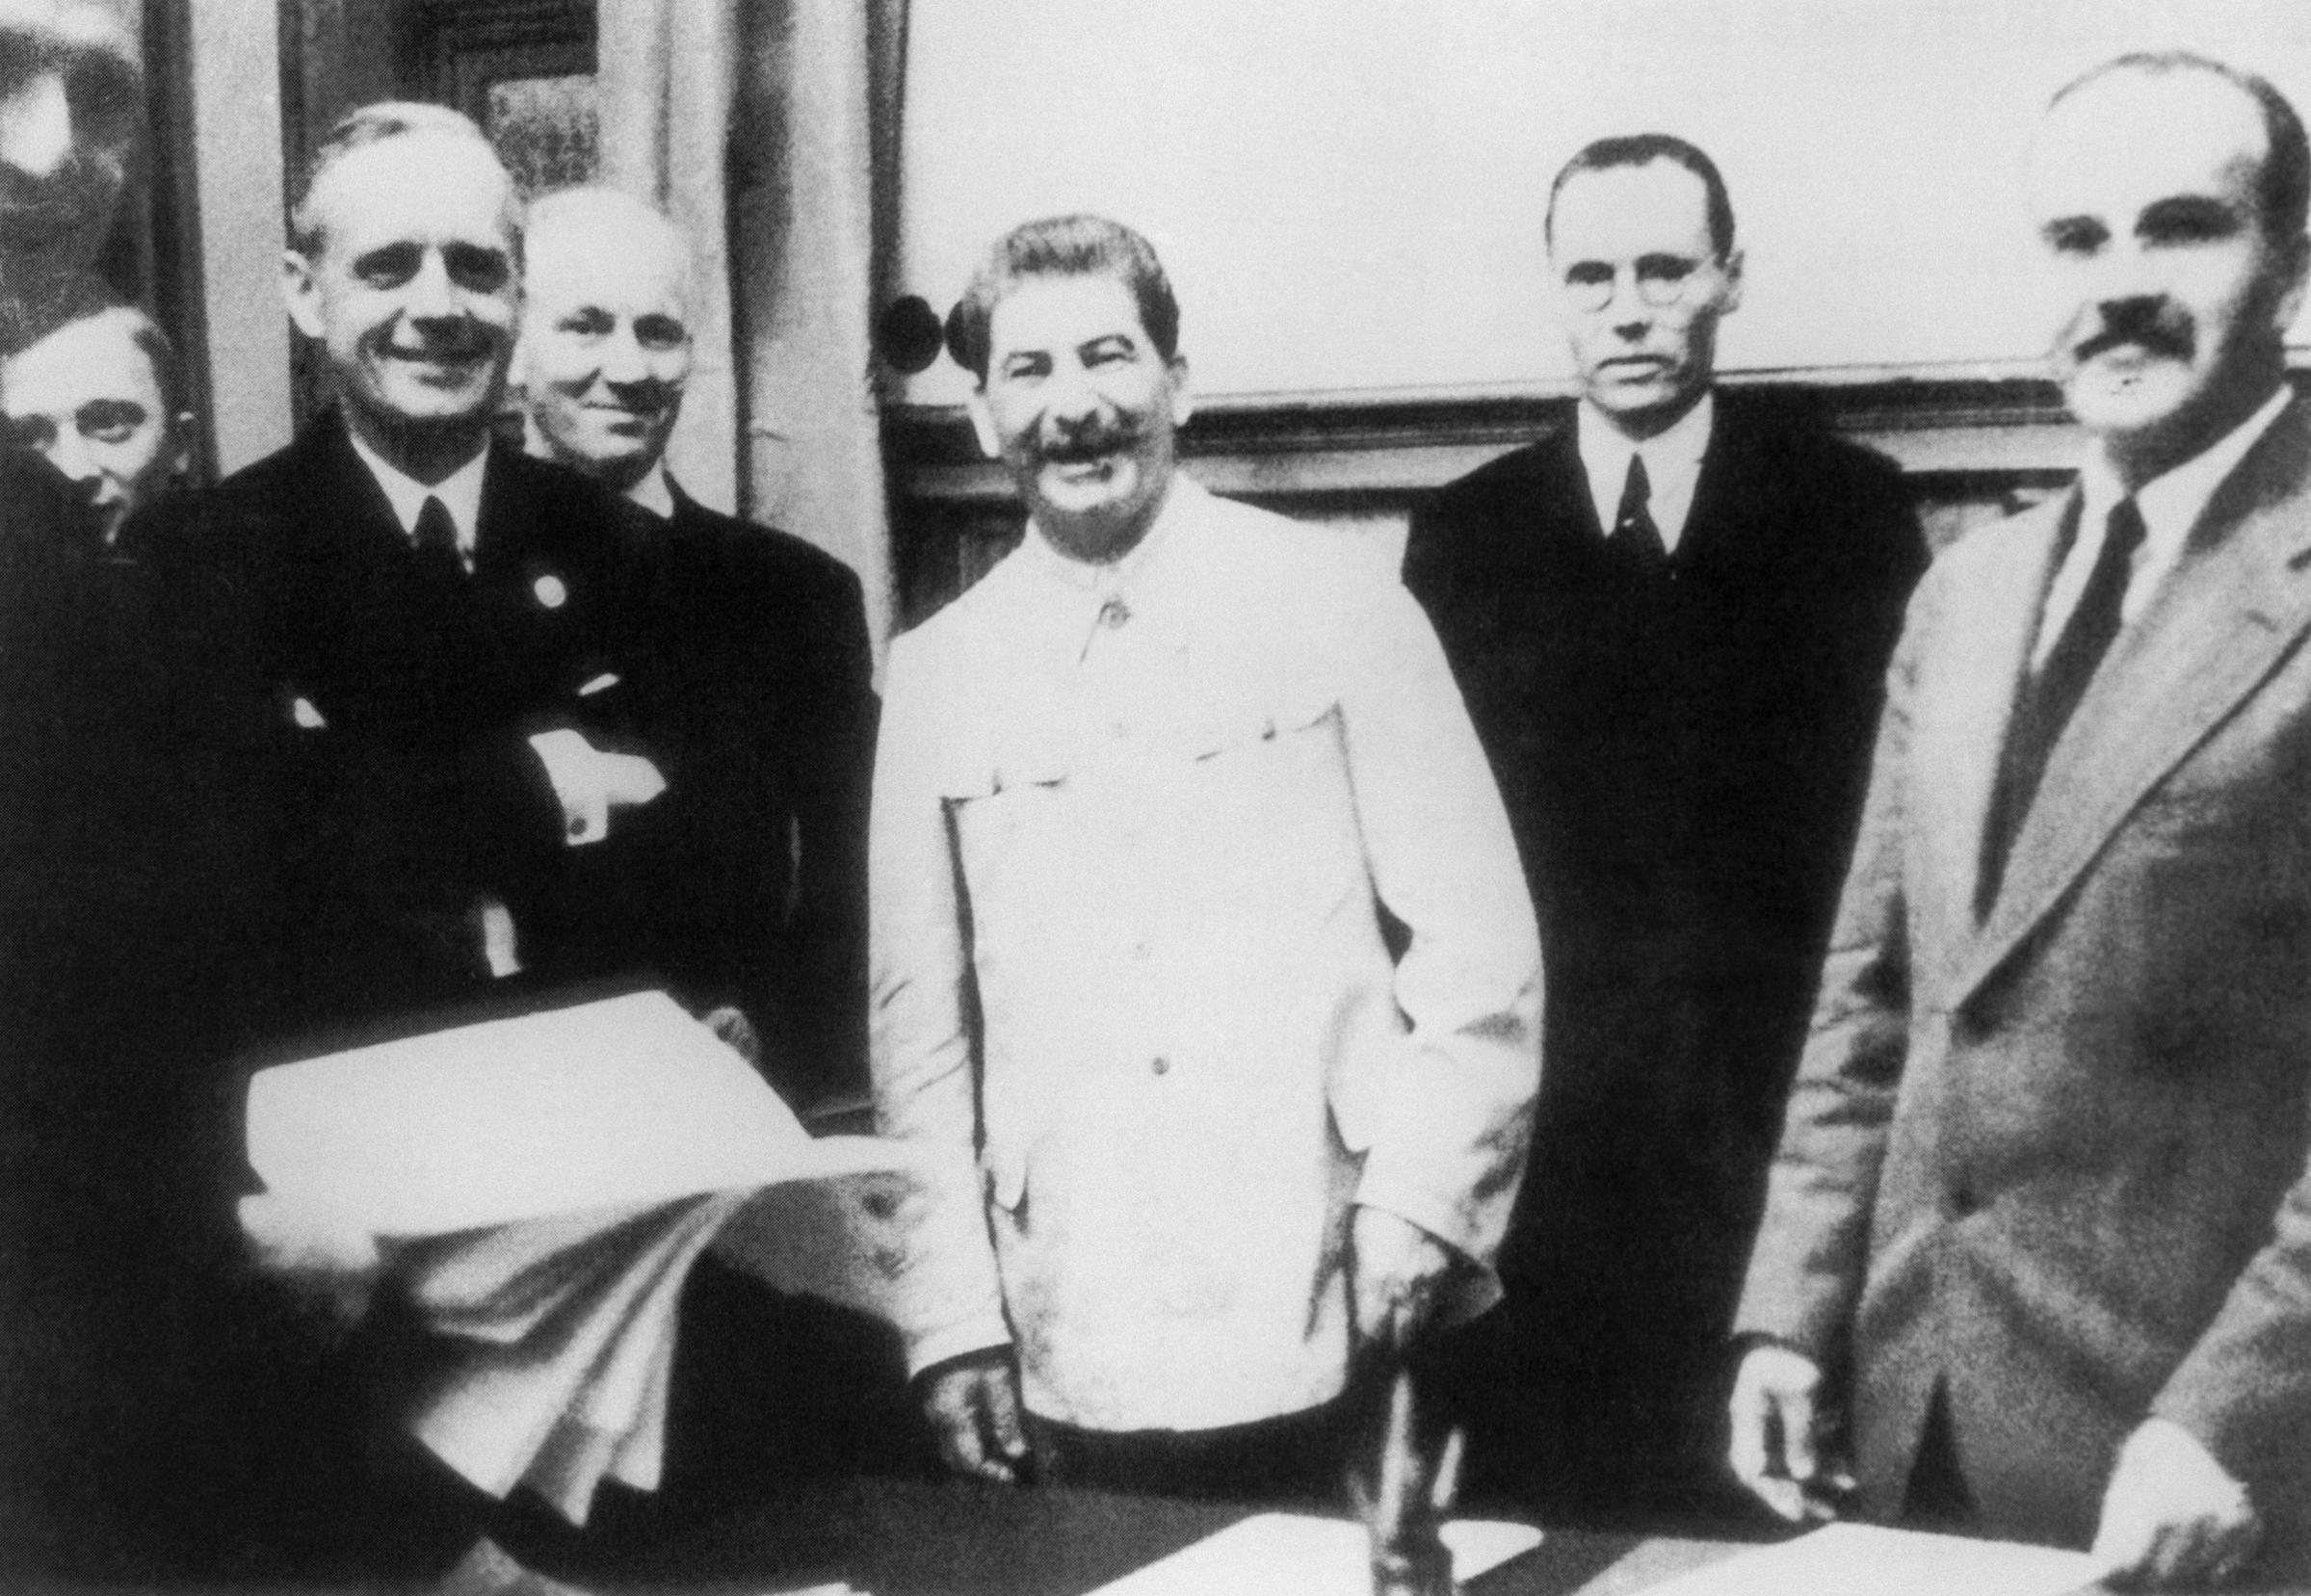 The Molotov-Ribbentrop Pact signing, 1939